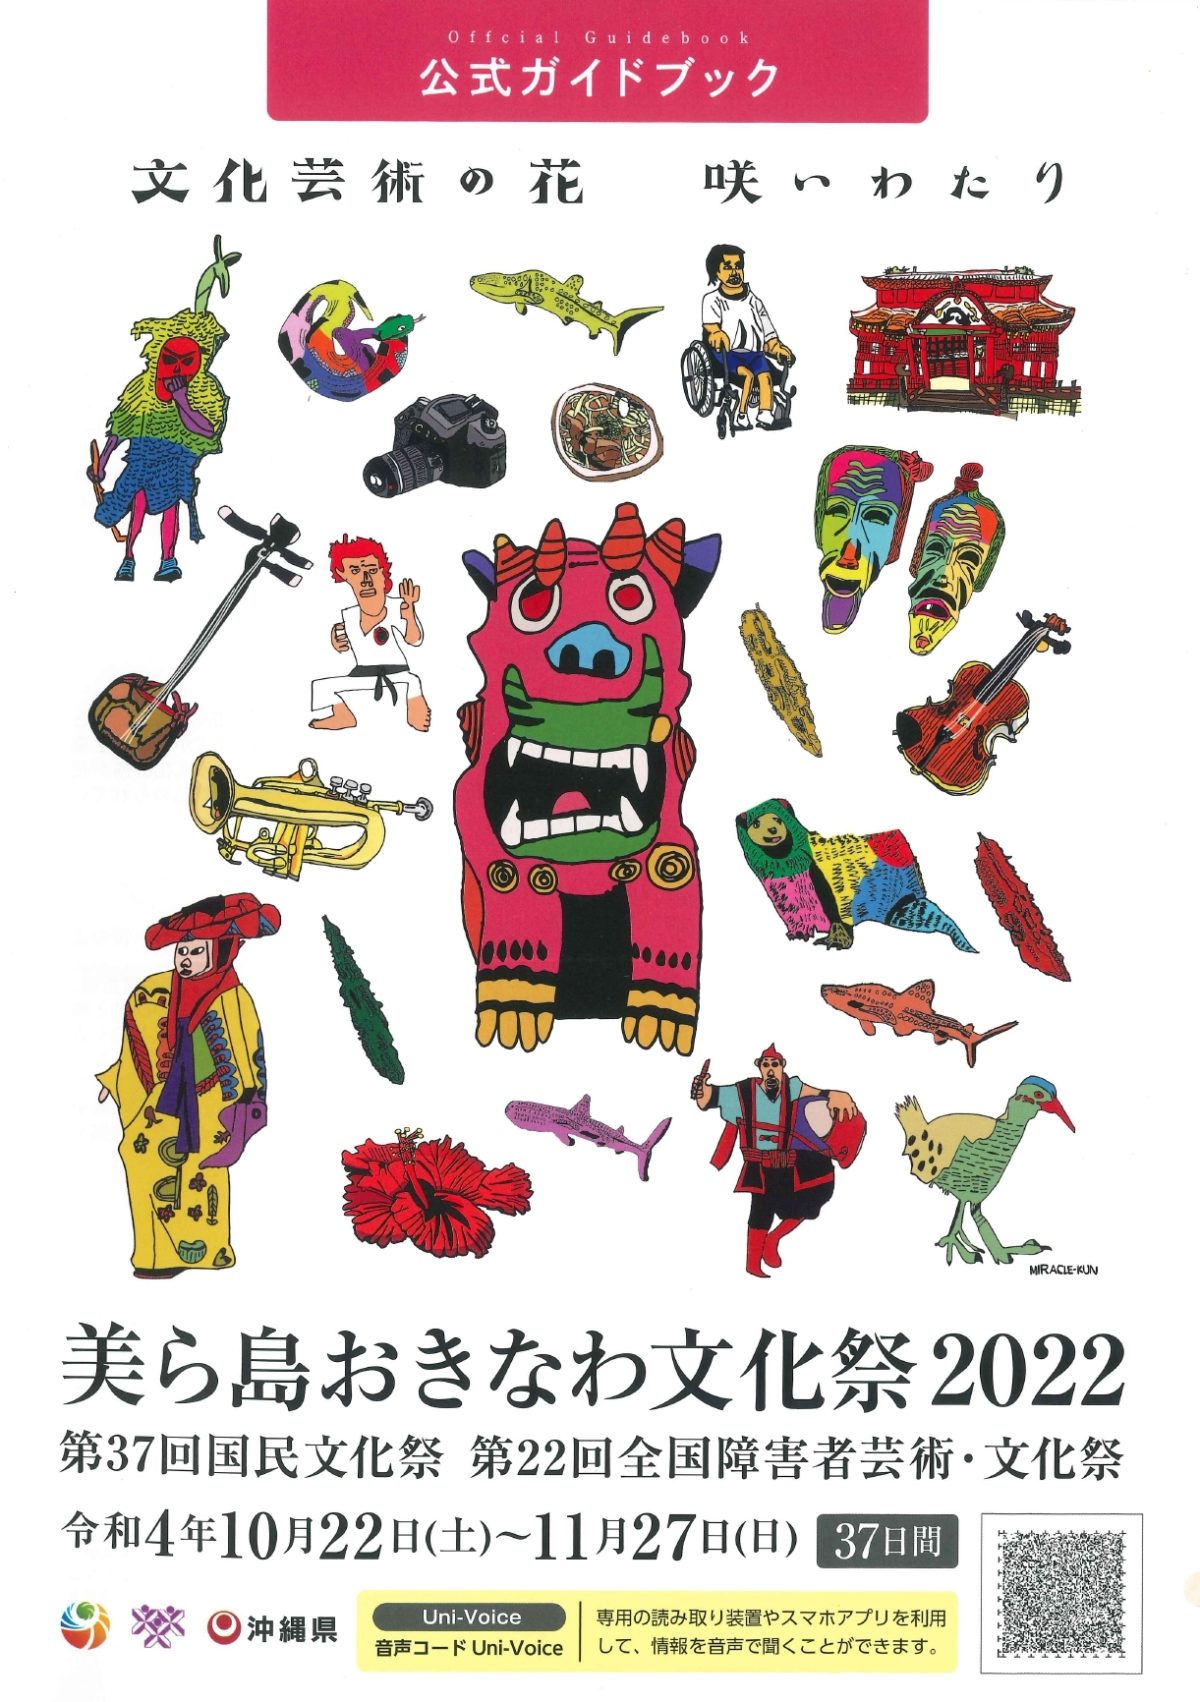 「美ら島おきなわ文化祭2022」公式ガイドブック届きました！